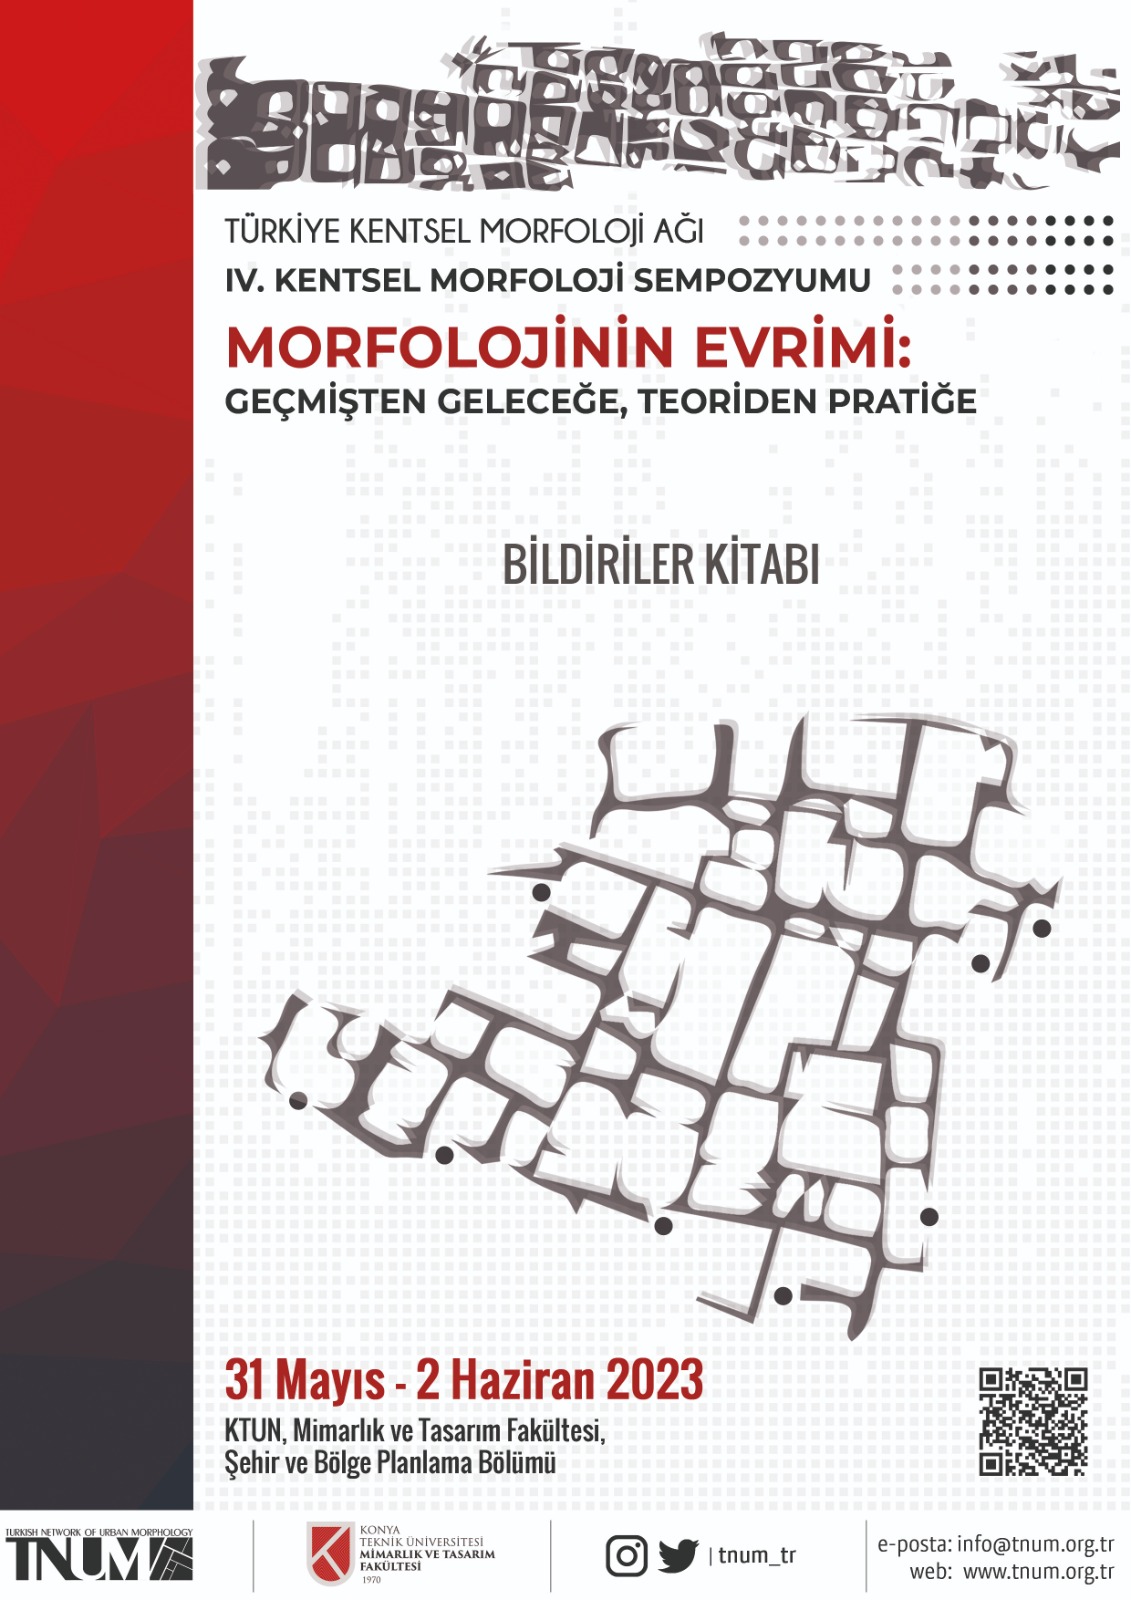                     2023: Türkiye Kentsel Morfoloji Ağı,   IV. Kentsel Morfoloji Sempozyumu "MORFOLOJİNİN EVRİMİ: Geçmişten Geleceğe, Teoriden Pratiğe", KTUN Mimarlık ve Tasarım Fakültesi Gör
                